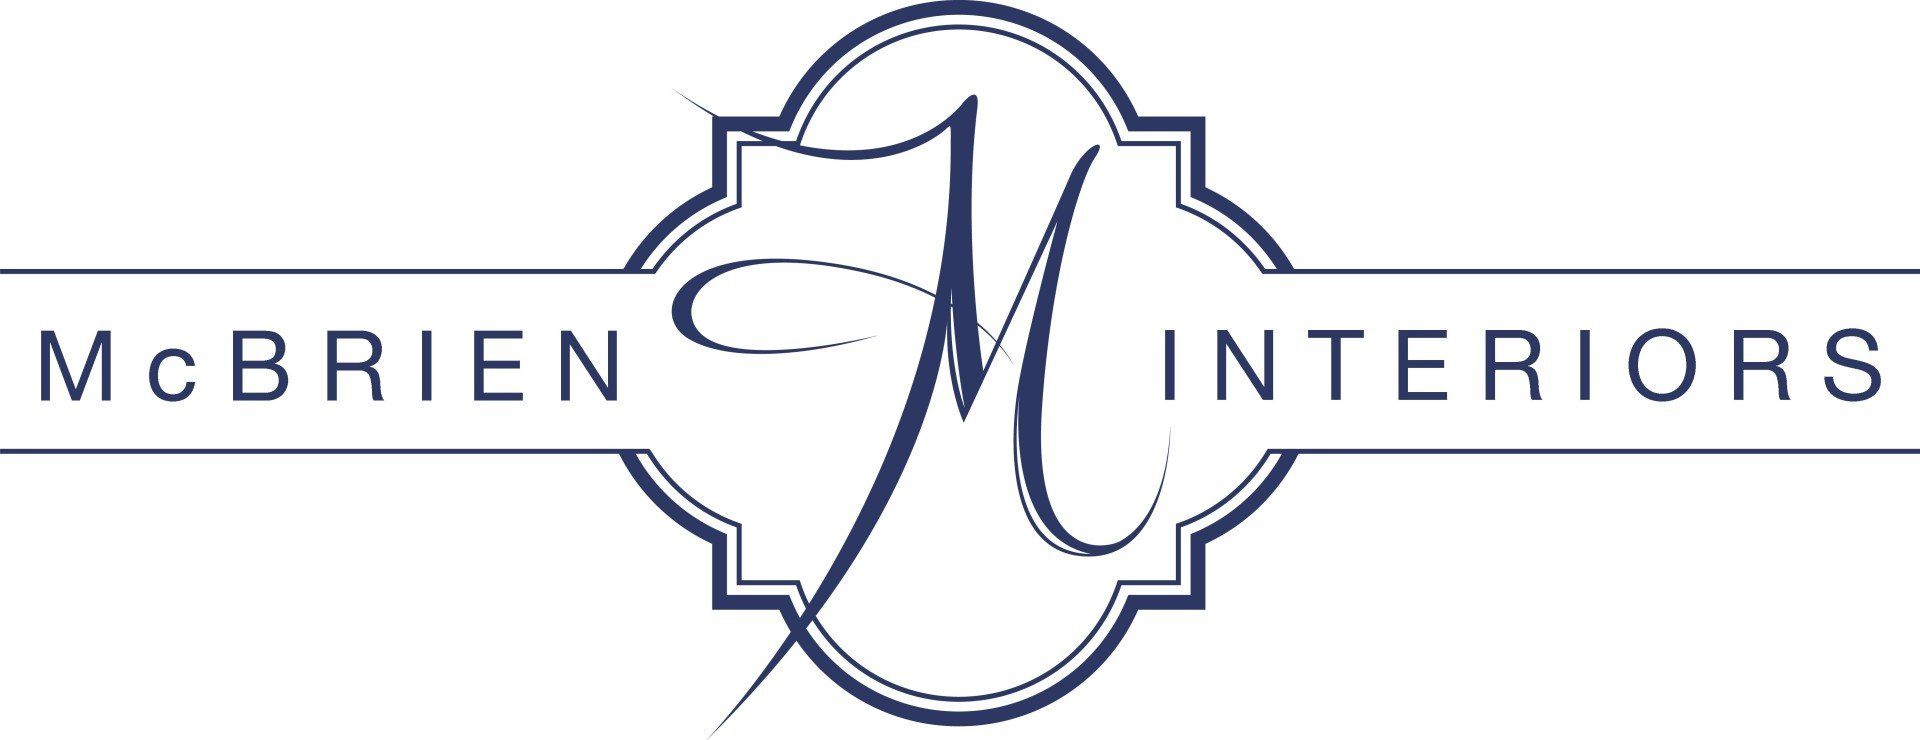 McBrien Interiors logo